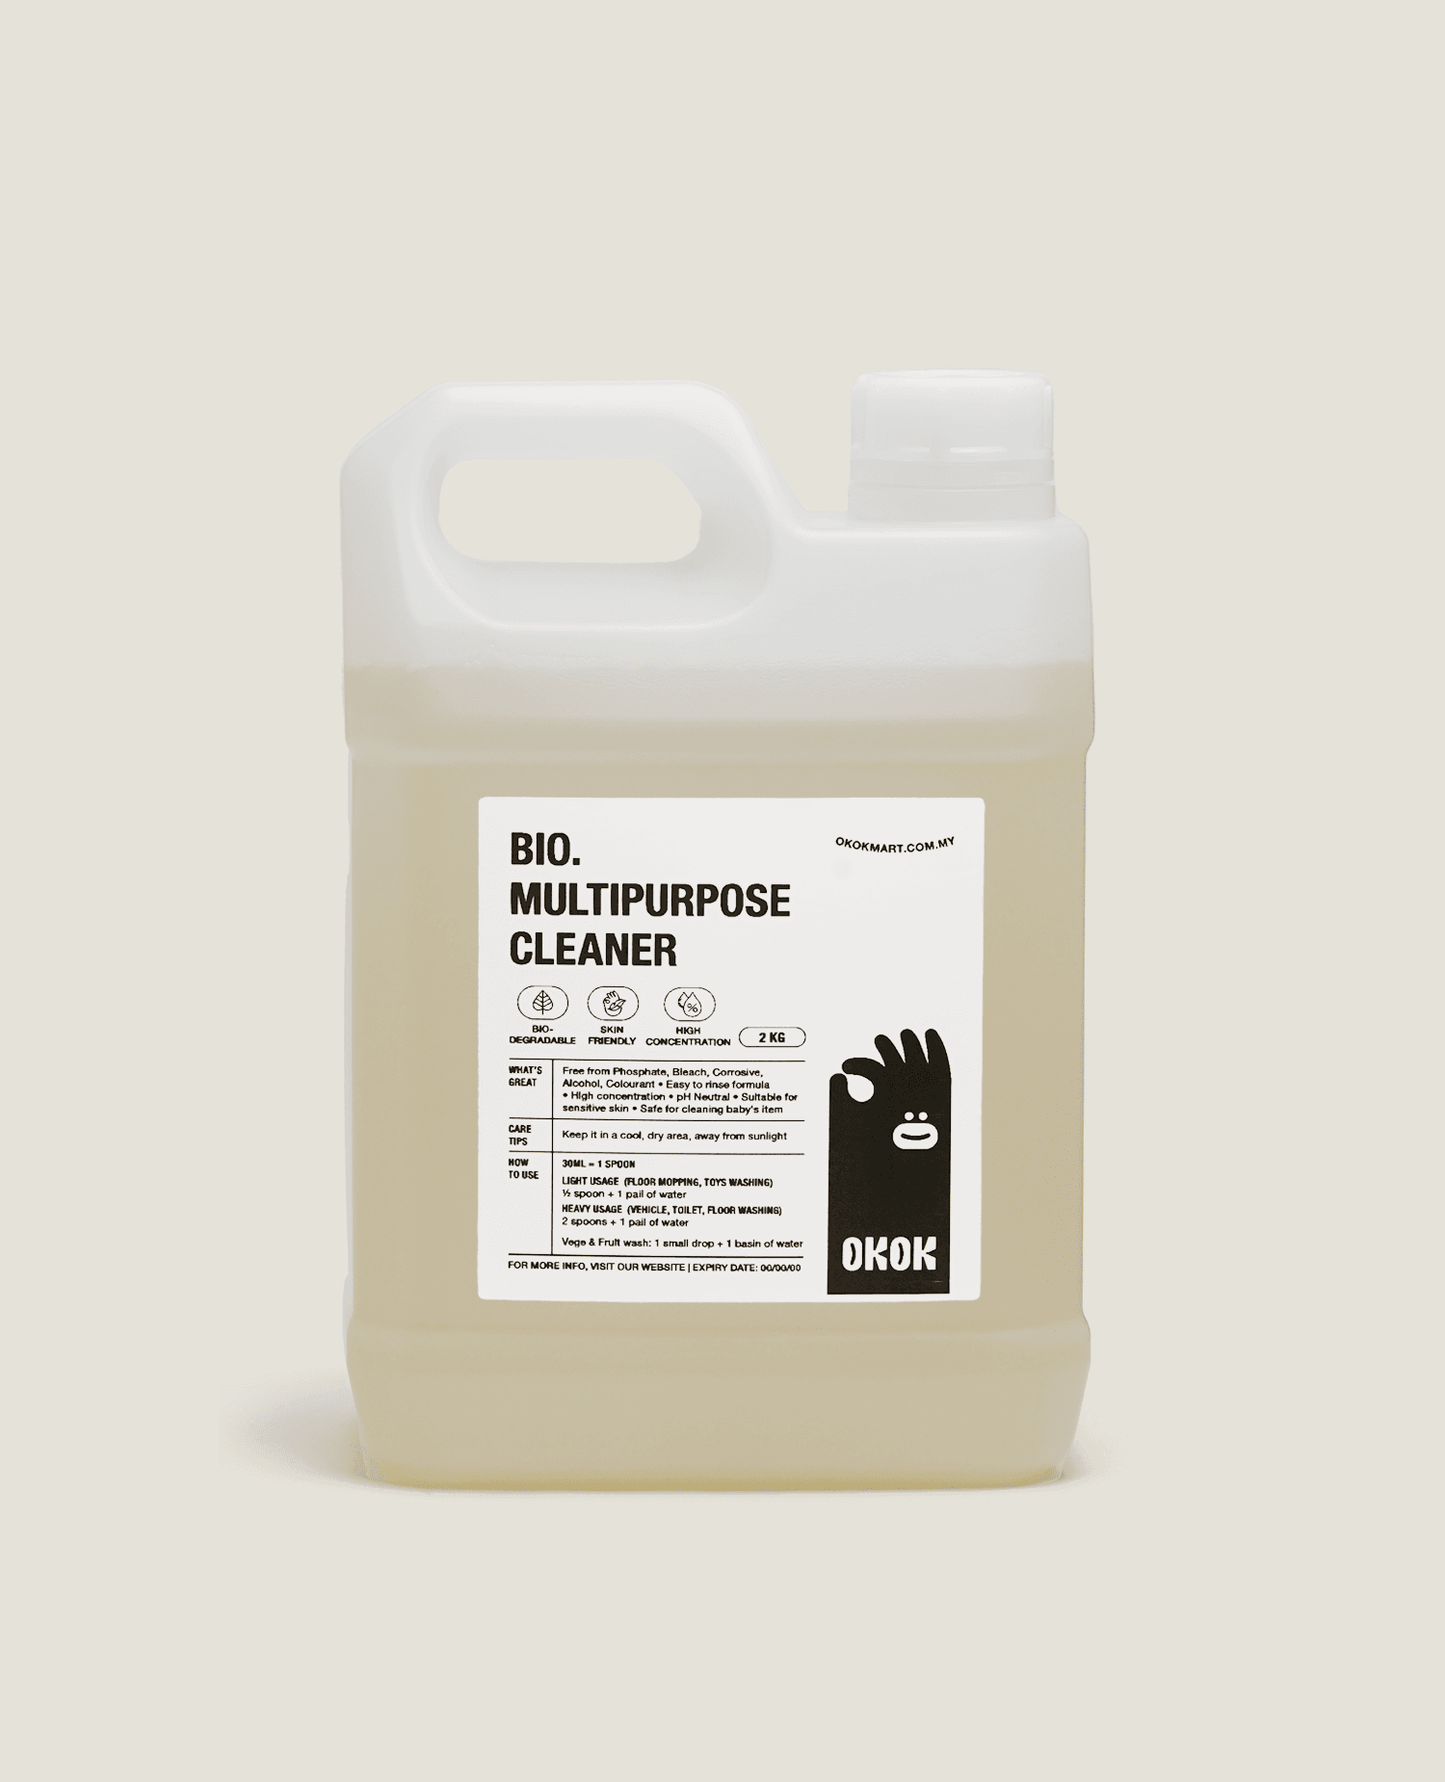 Bio. Multipurpose Cleaner